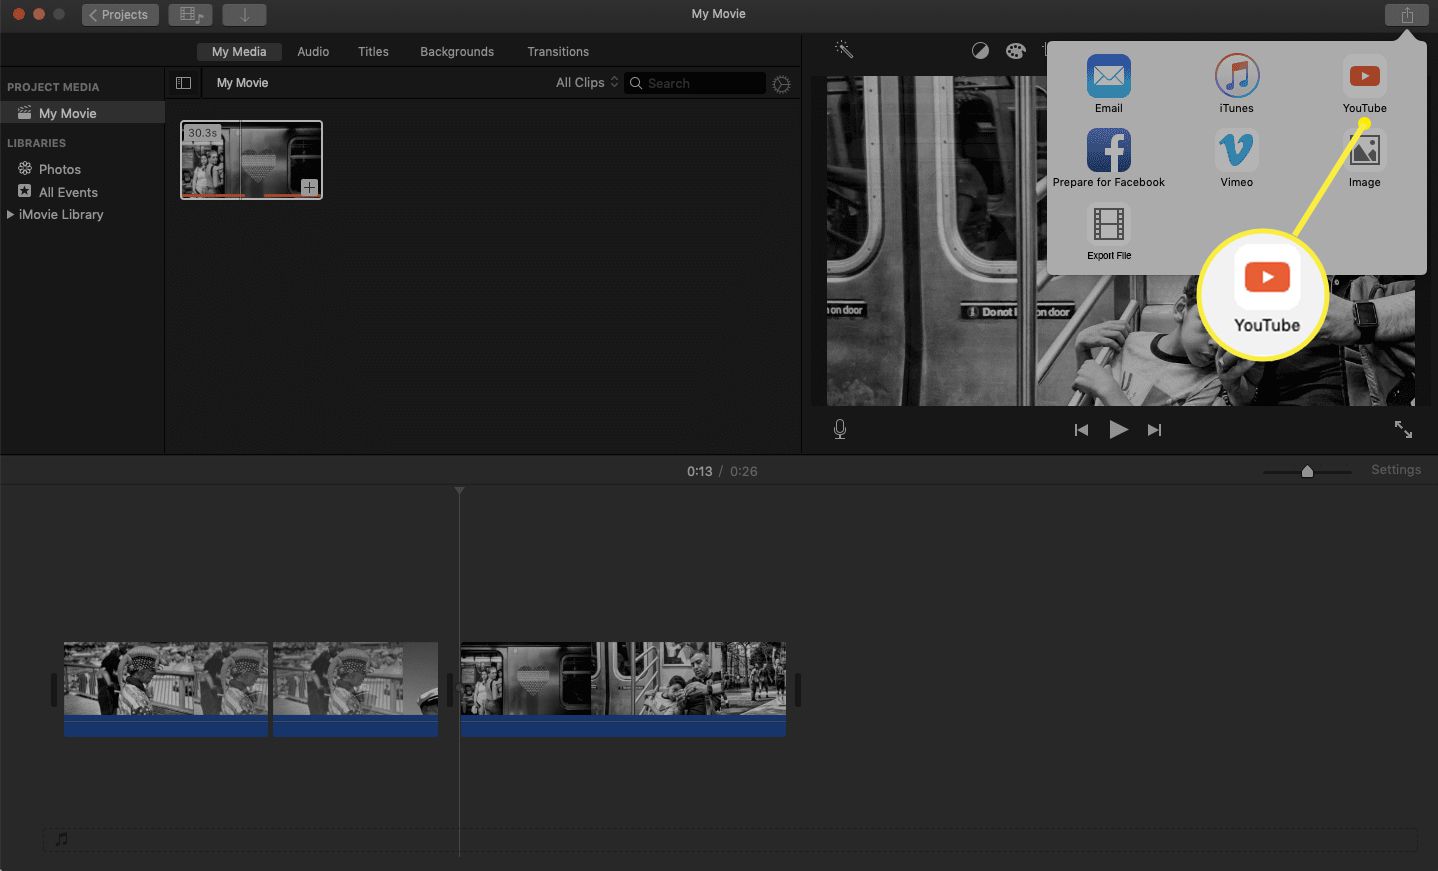 Guia de compartilhamento do iMovie com o ícone do You Tube destacado.